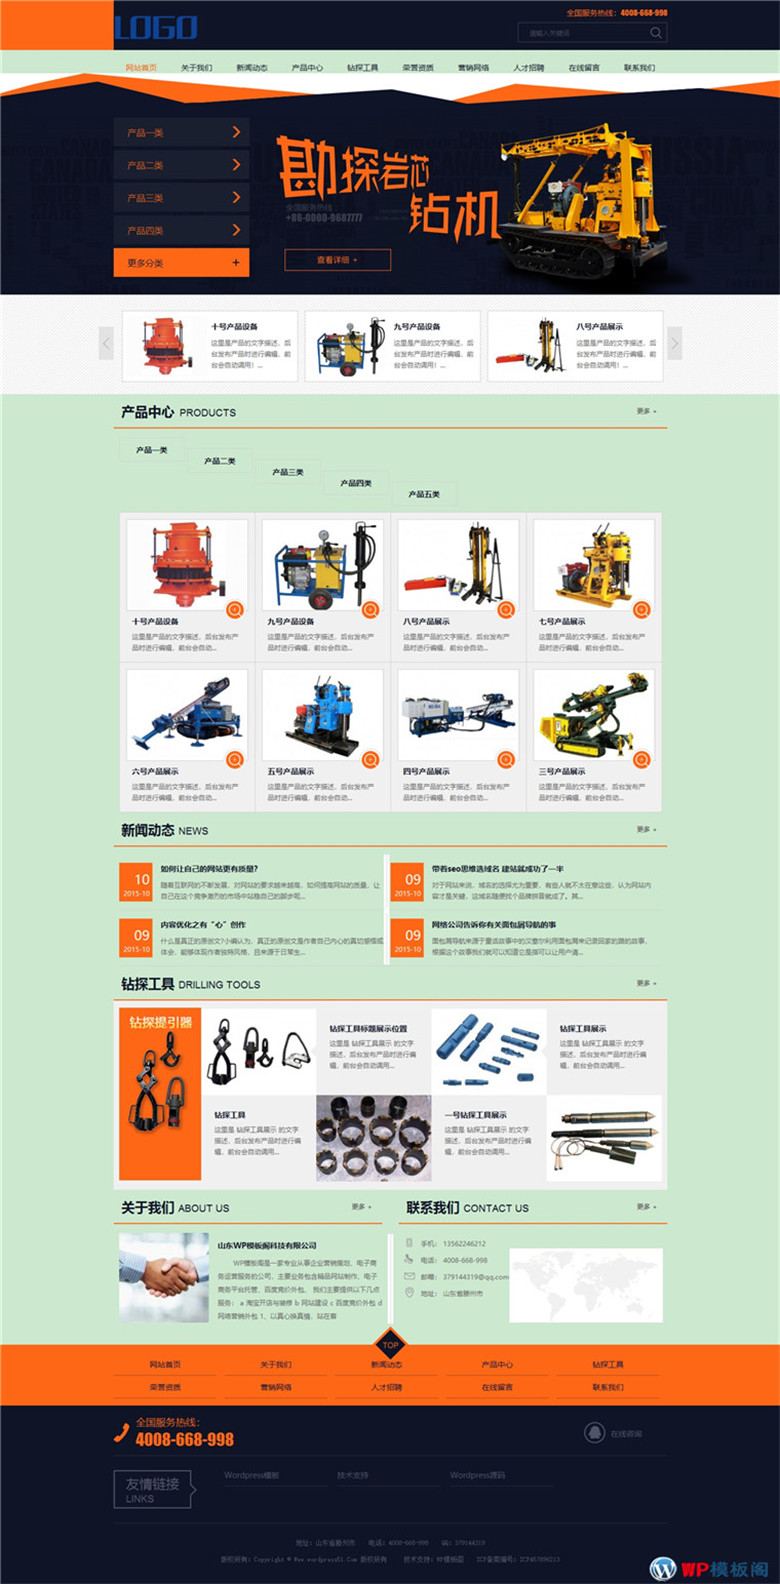 大气橙黄色机电设备产品企业公司下载网站主题模板下载演示图